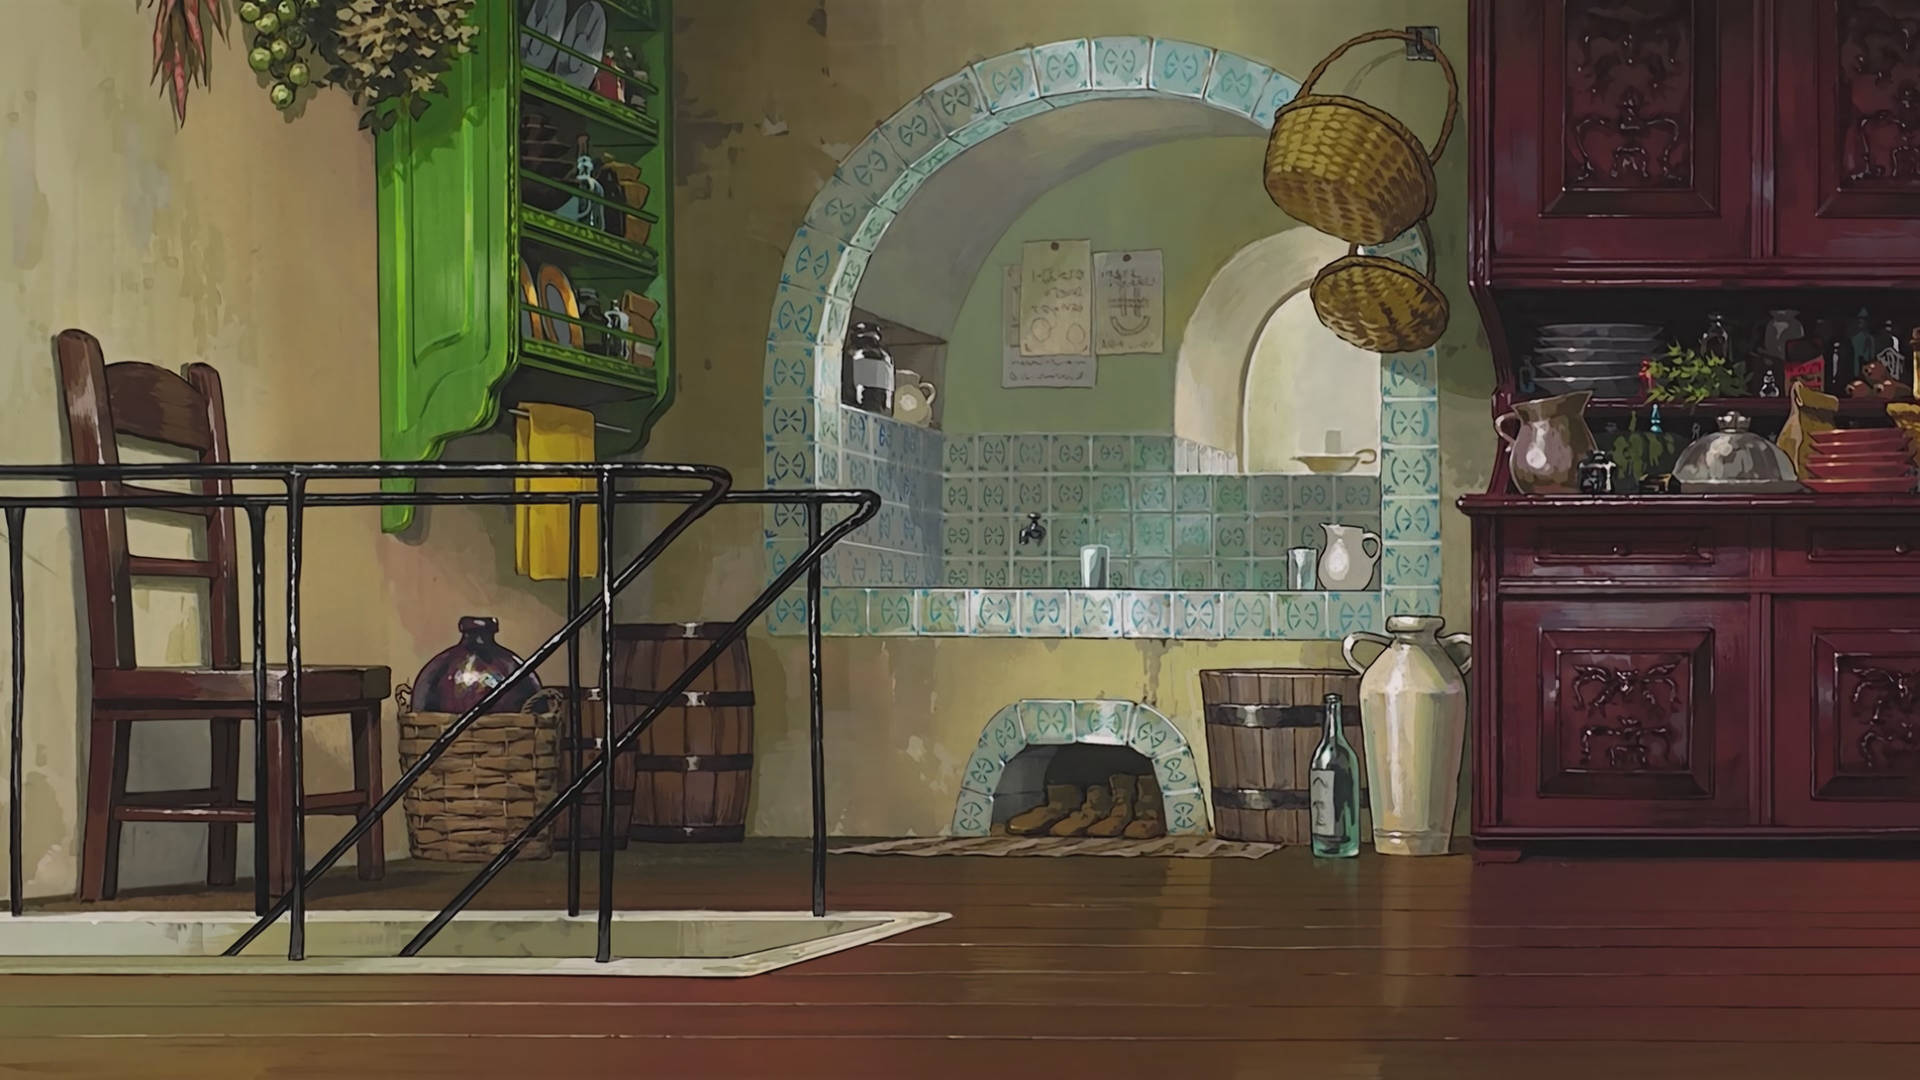 Studio Ghibli Scenery Of Old Cupboards